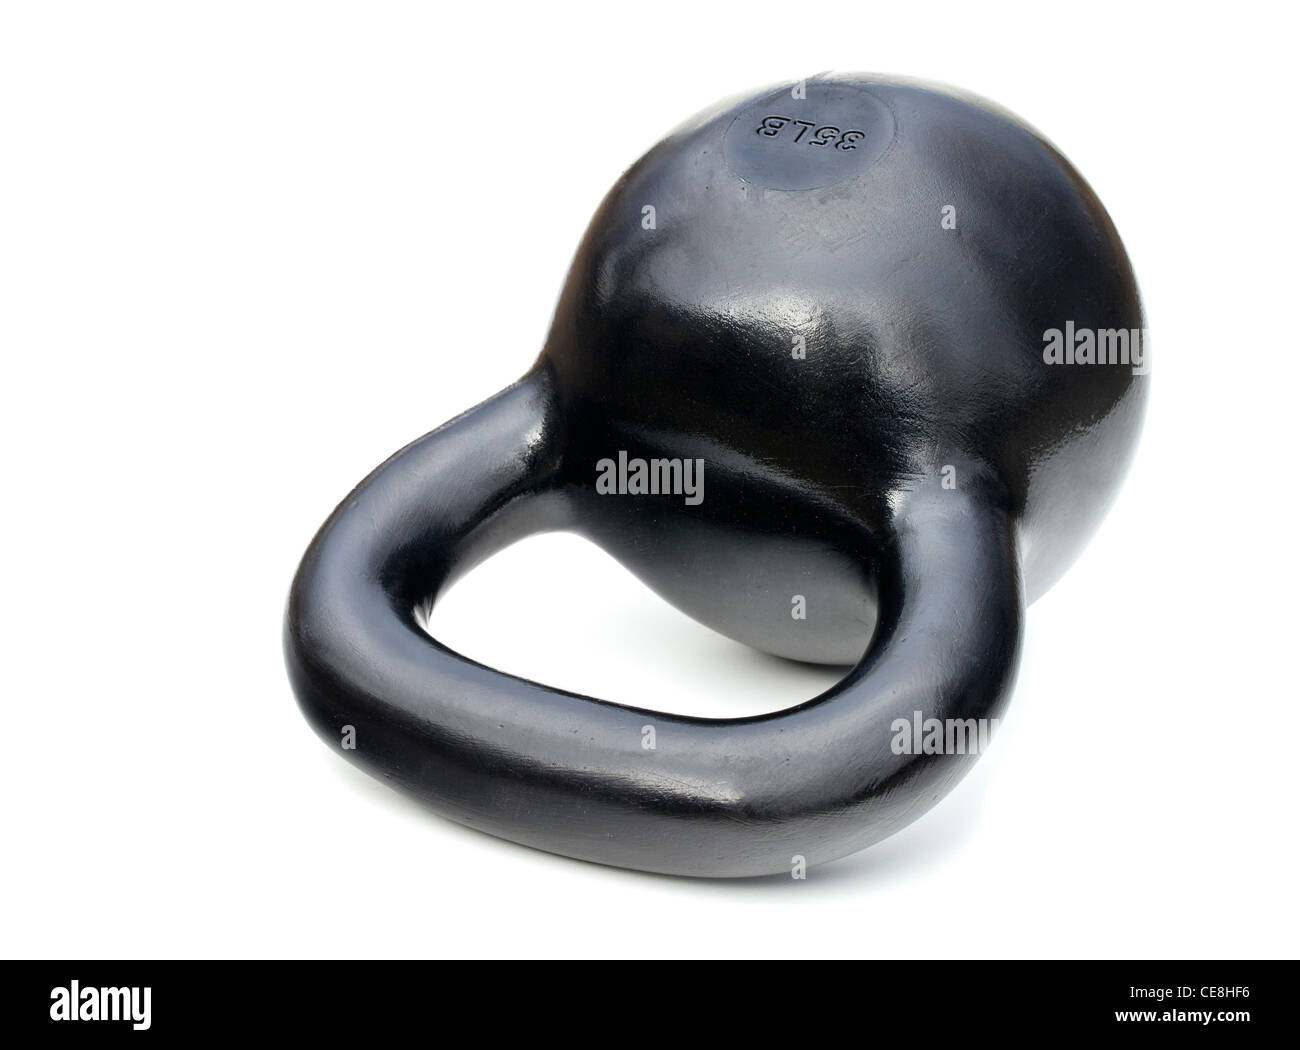 35 lb noir kettlebell fer pour la formation de poids isolated on white Banque D'Images